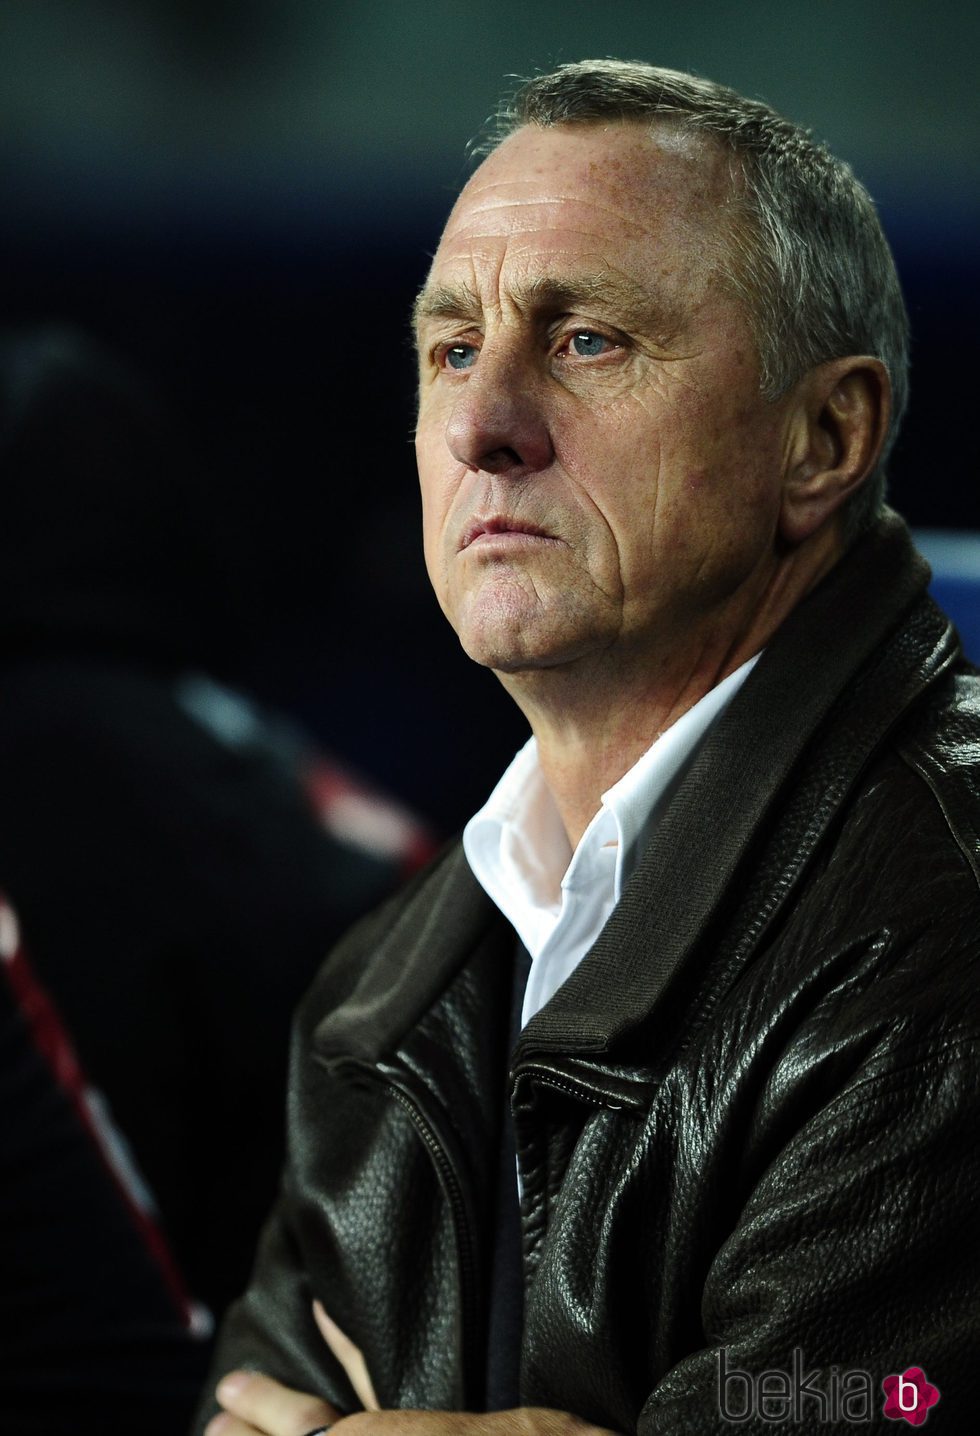 Johan Cruyff durante un partido amistoso en el Camp Nou